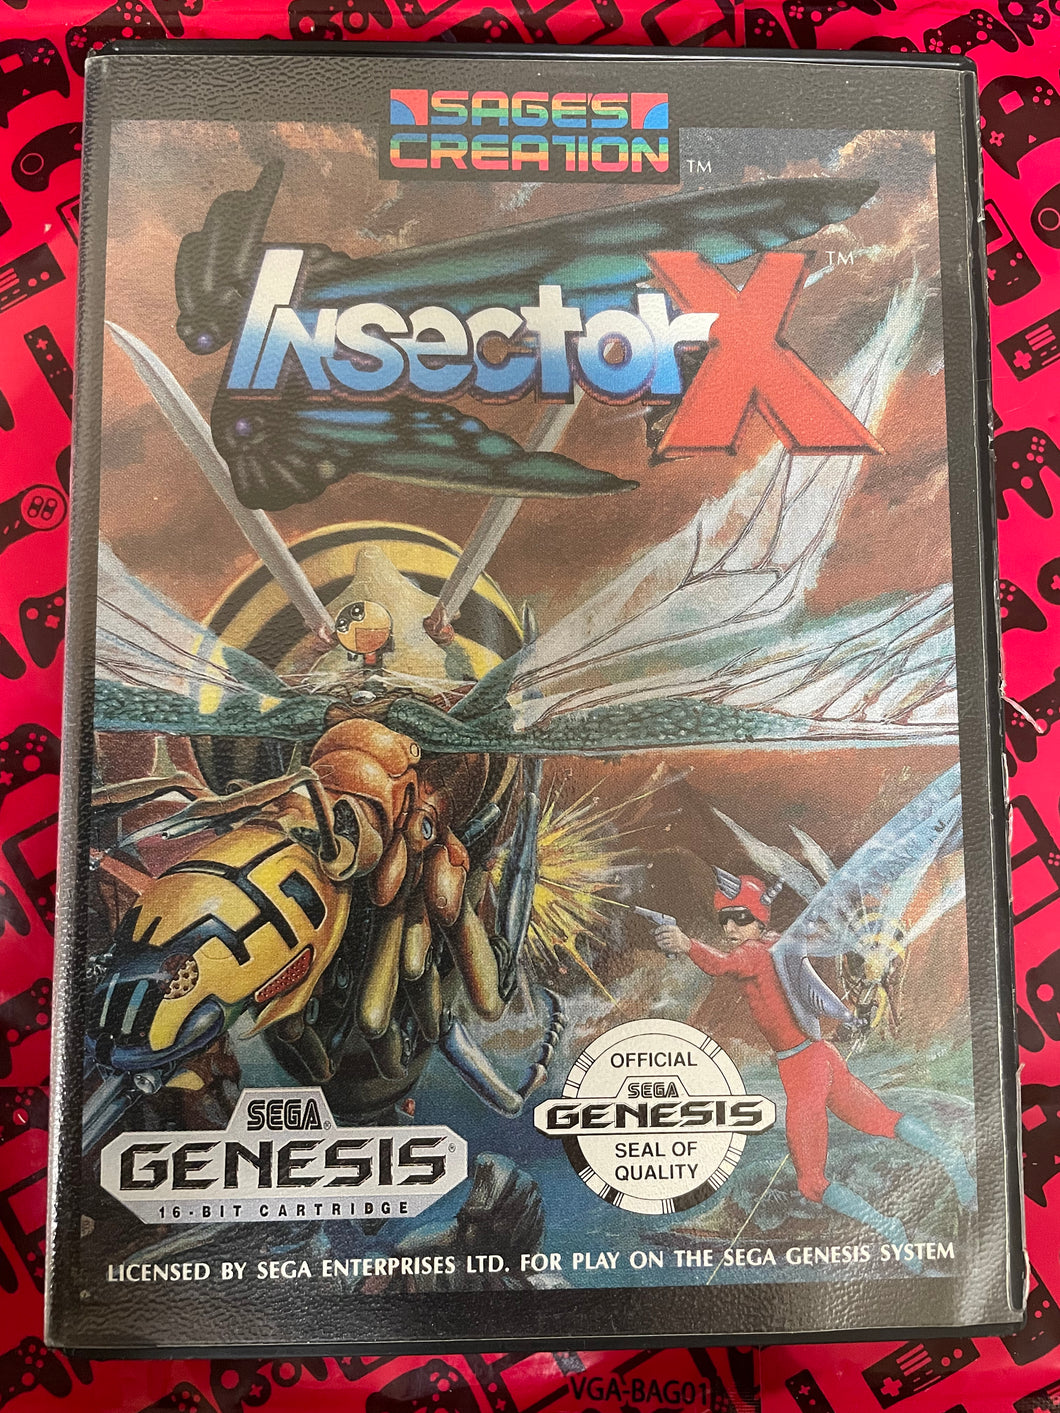 Insector X Sega Genesis